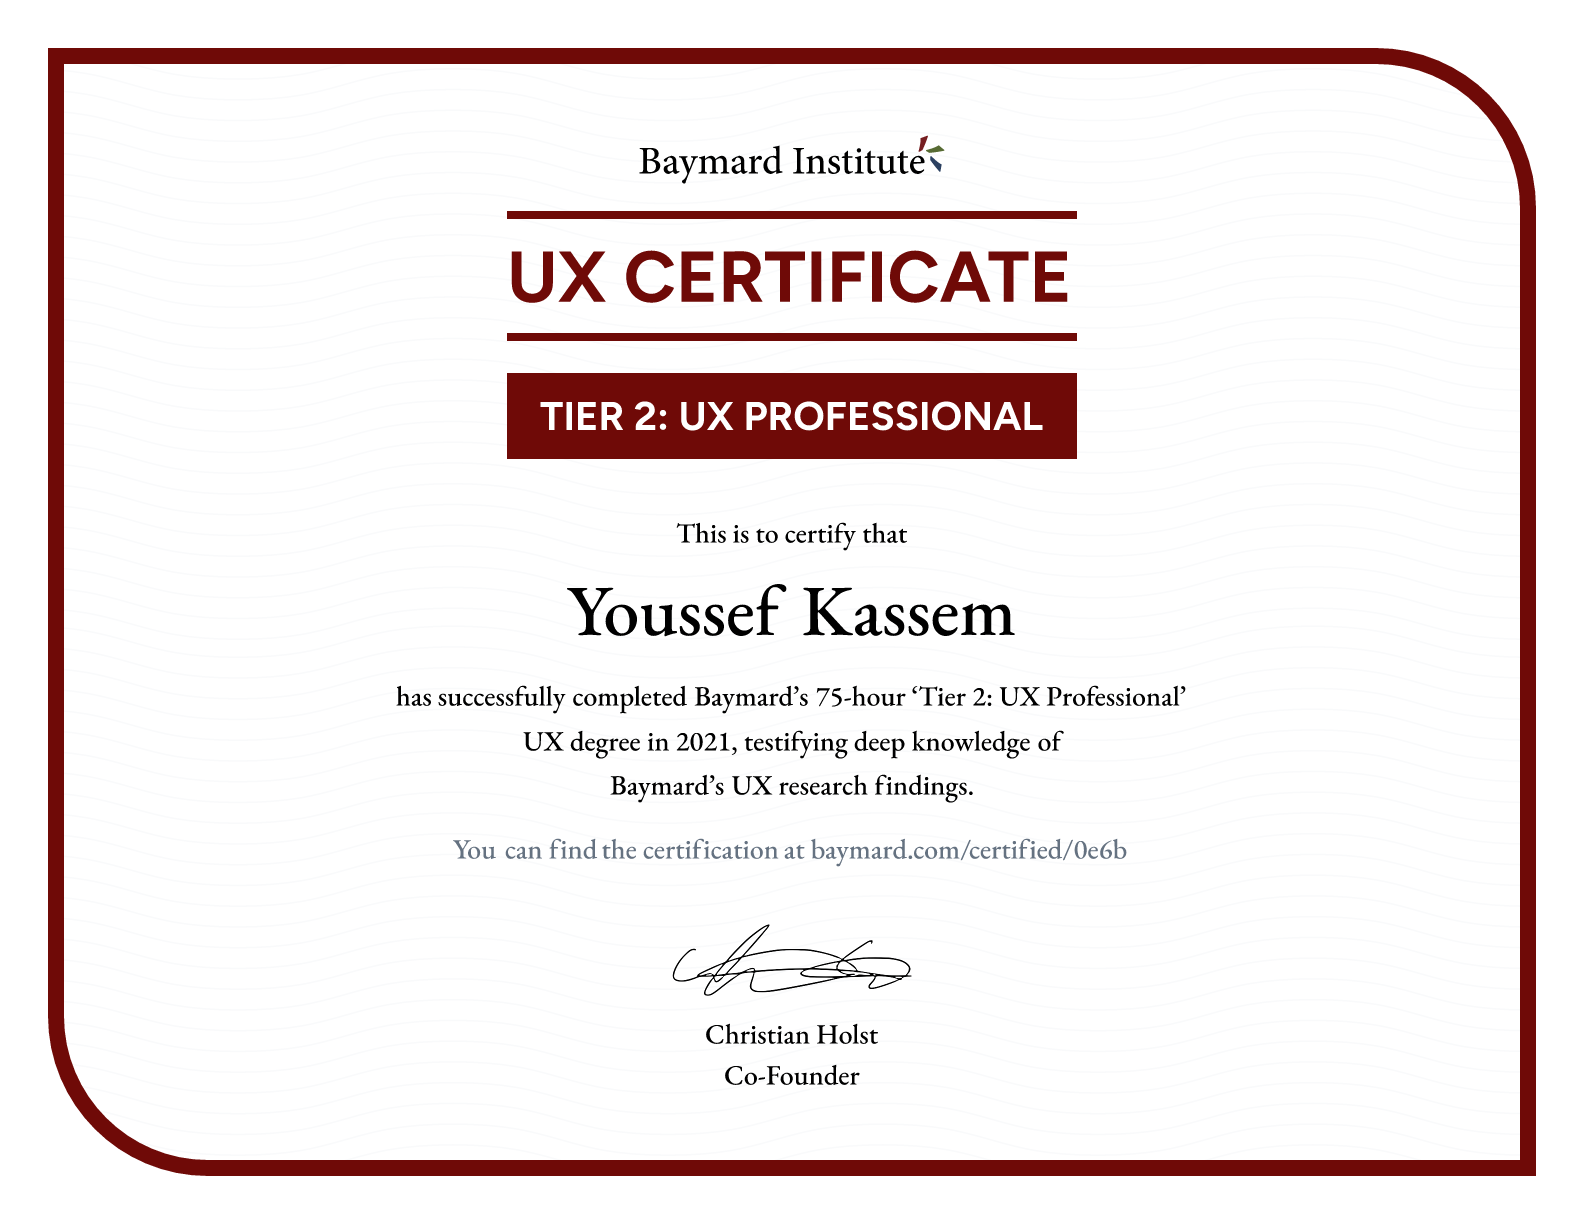 Youssef Kassem’s certificate